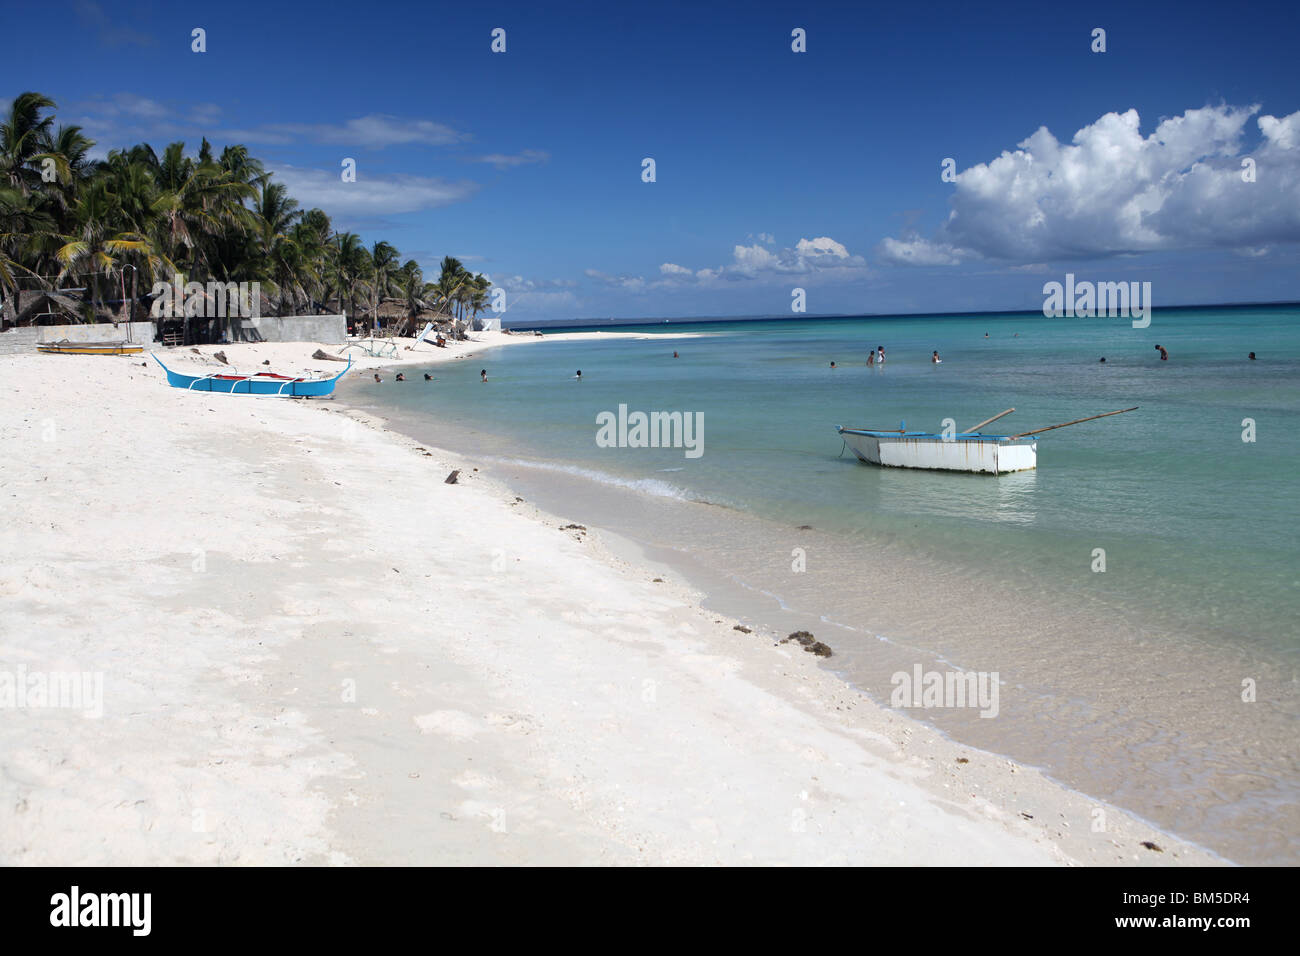 La plage de sable blanc de sucre, près de Santa Fe ville sur Bantayan Island dans la région de Visayas aux Philippines. Banque D'Images